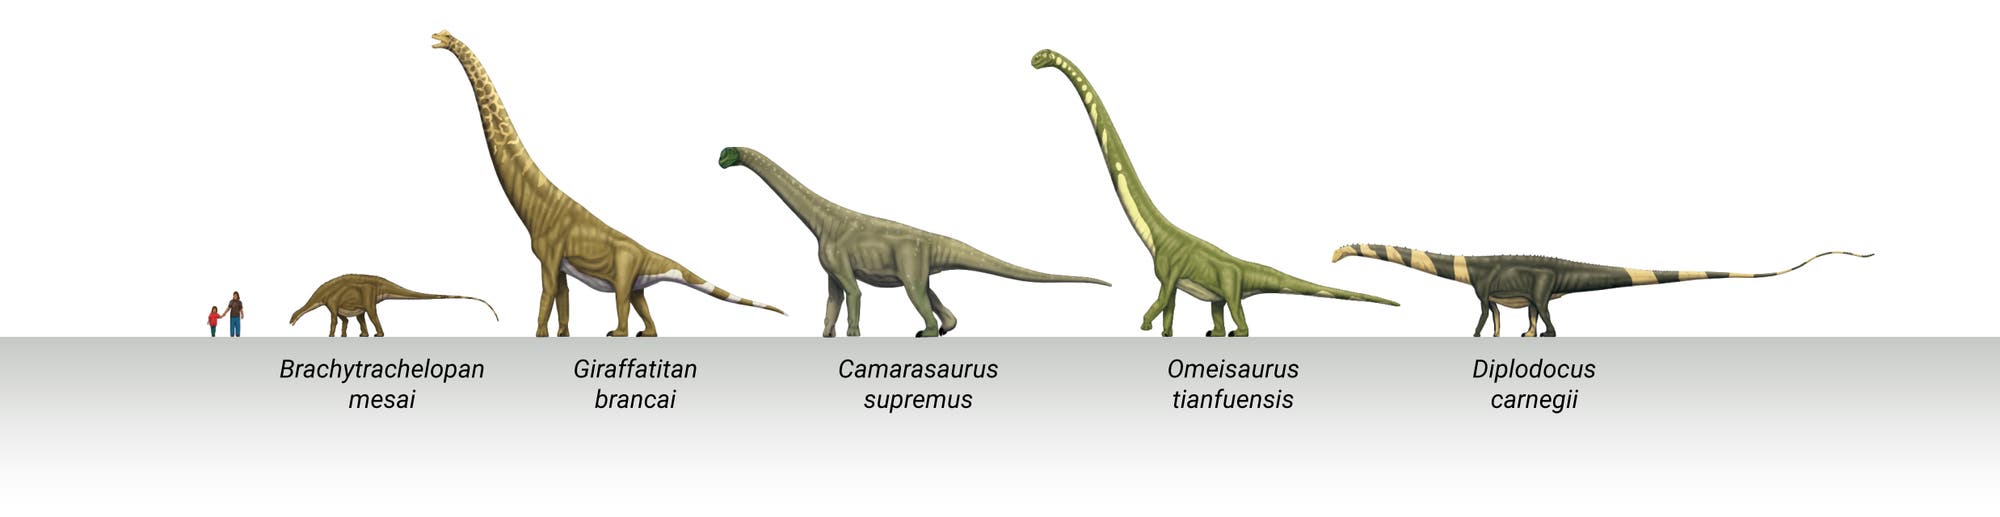 Sauropodengrößen im Vergleich